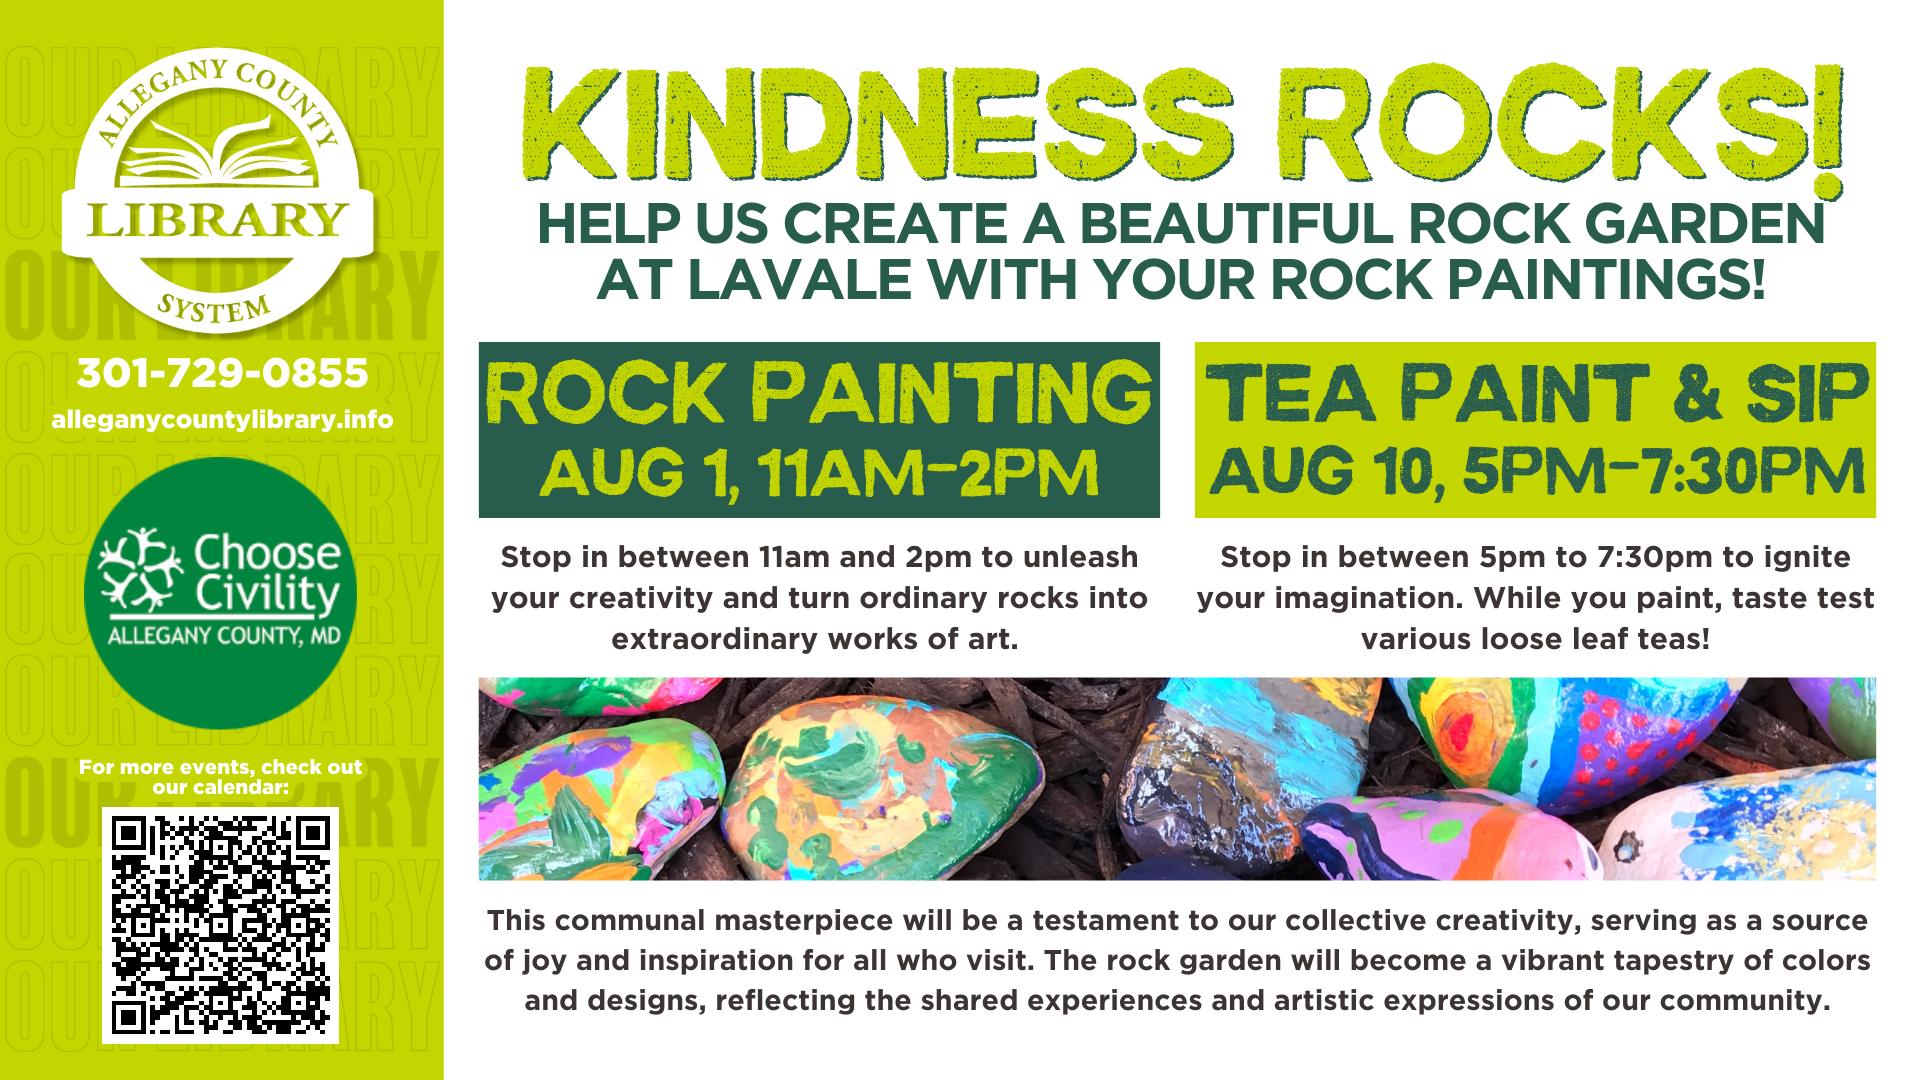 Kindness Rocks event details